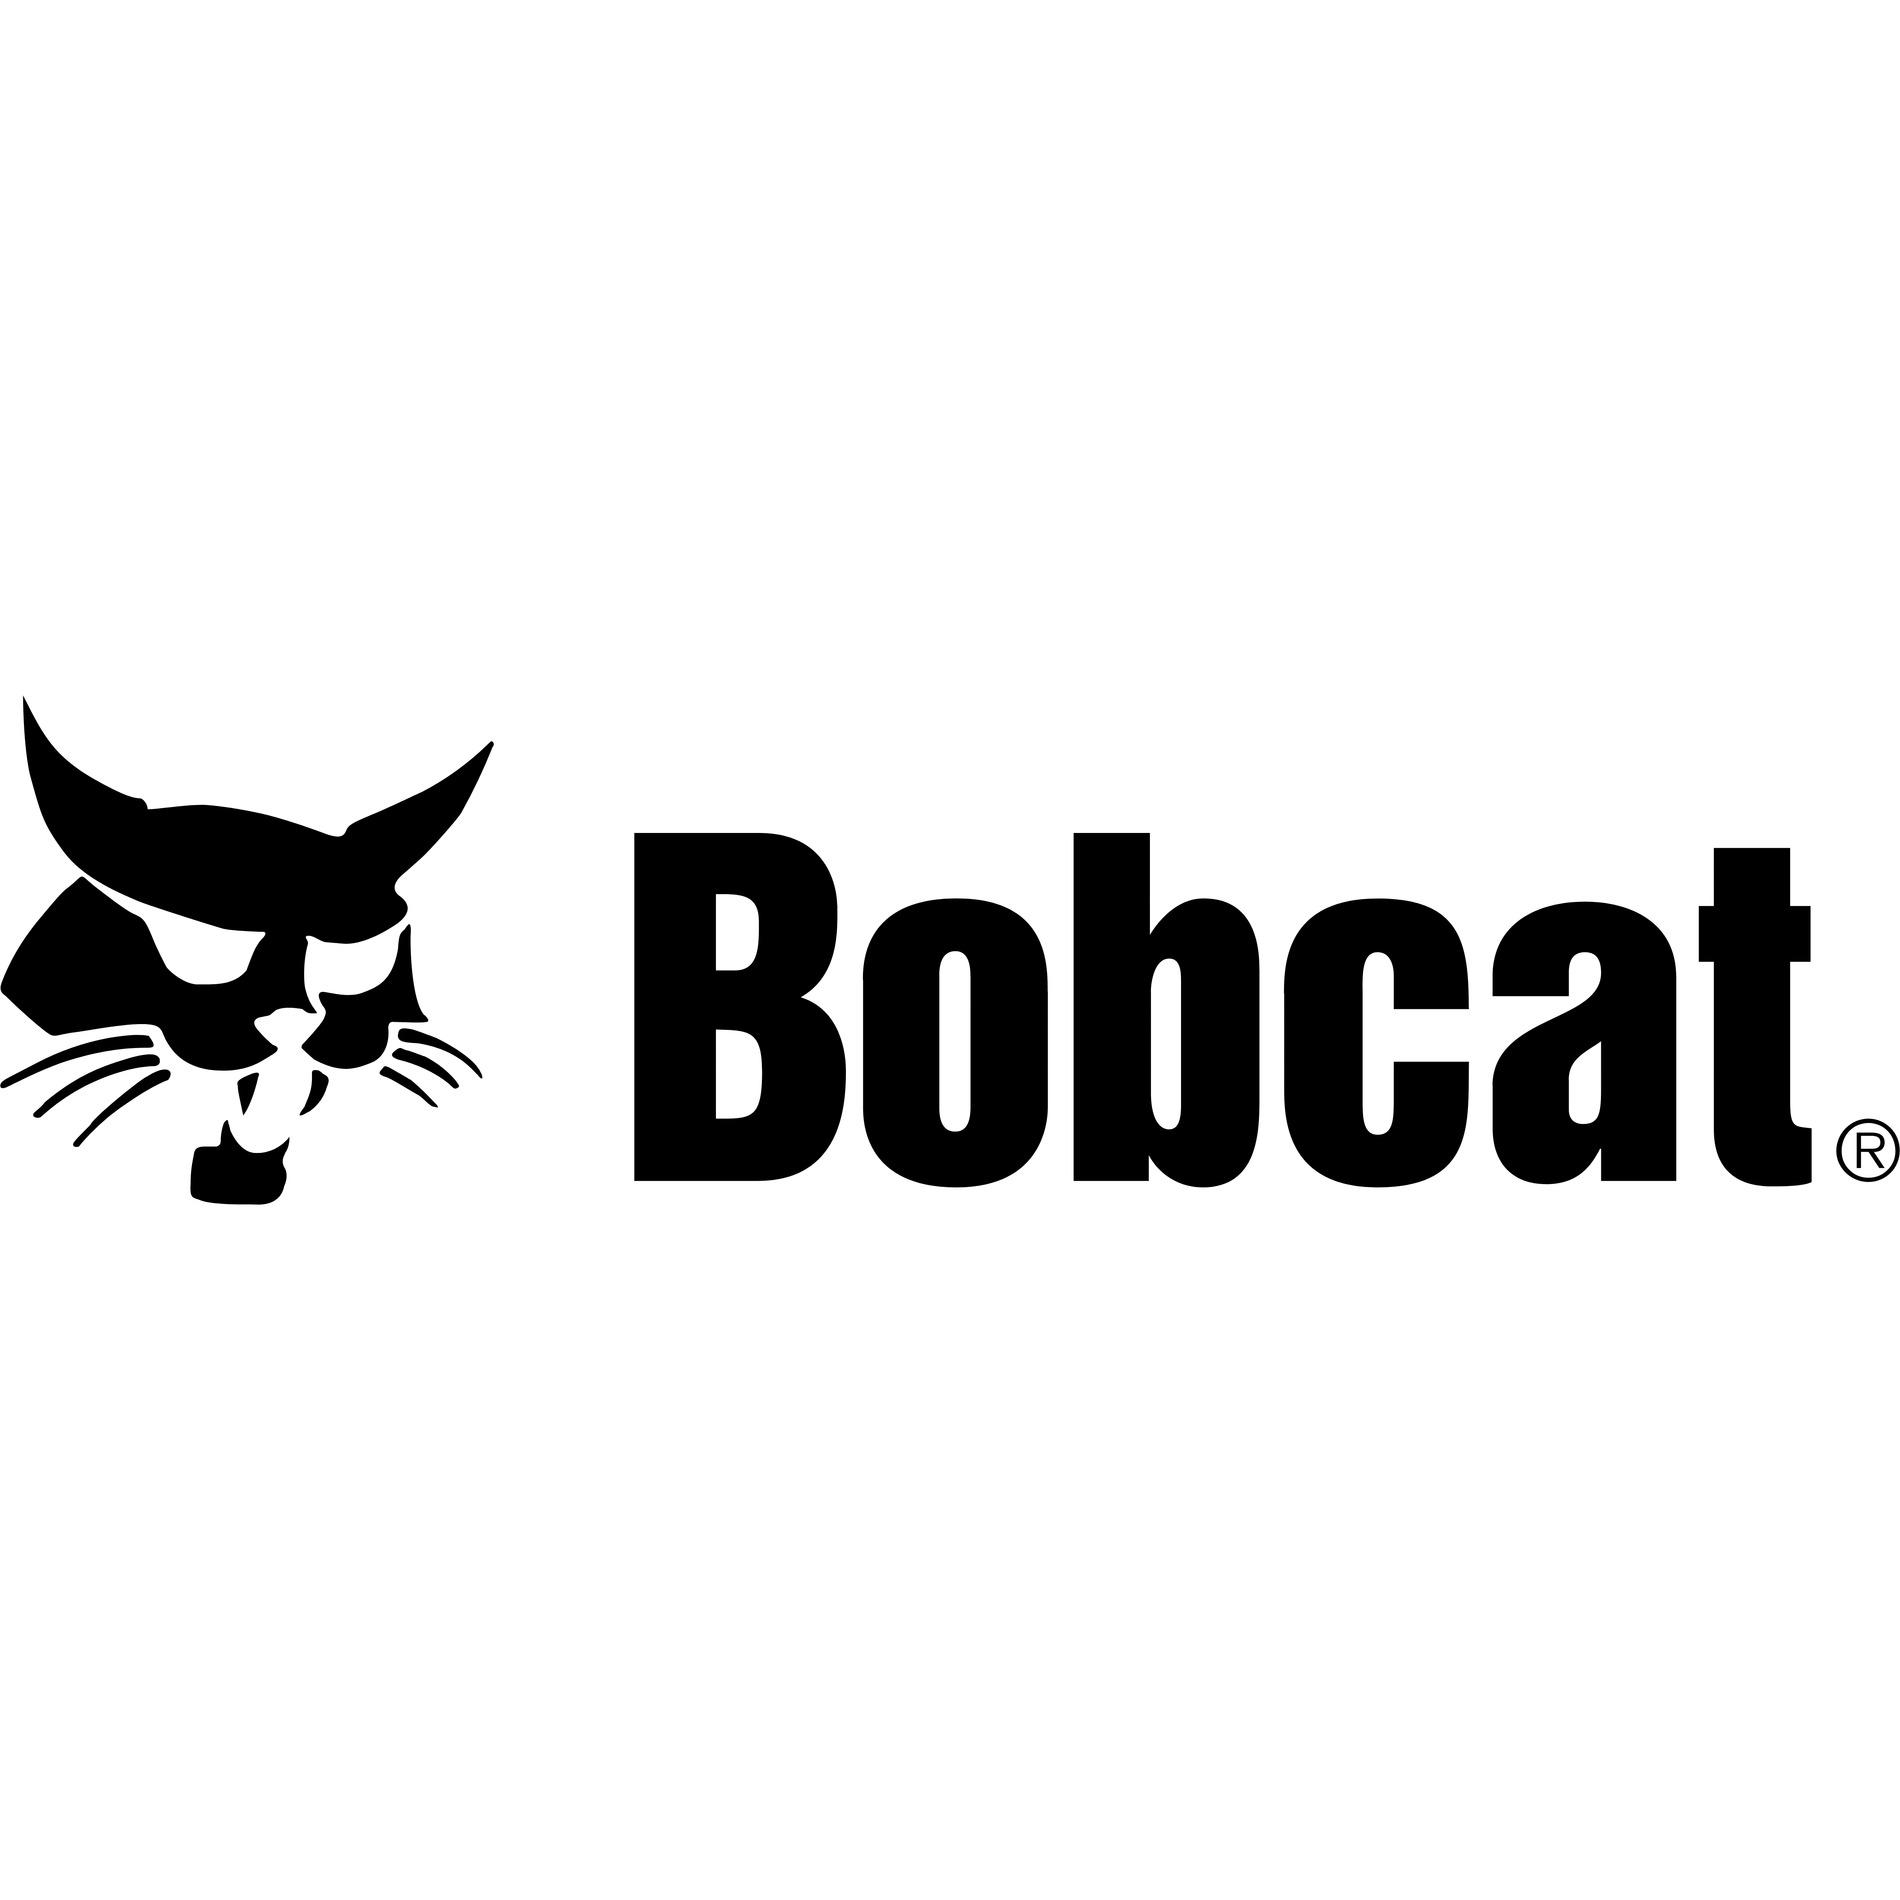 Atlas Bobcat